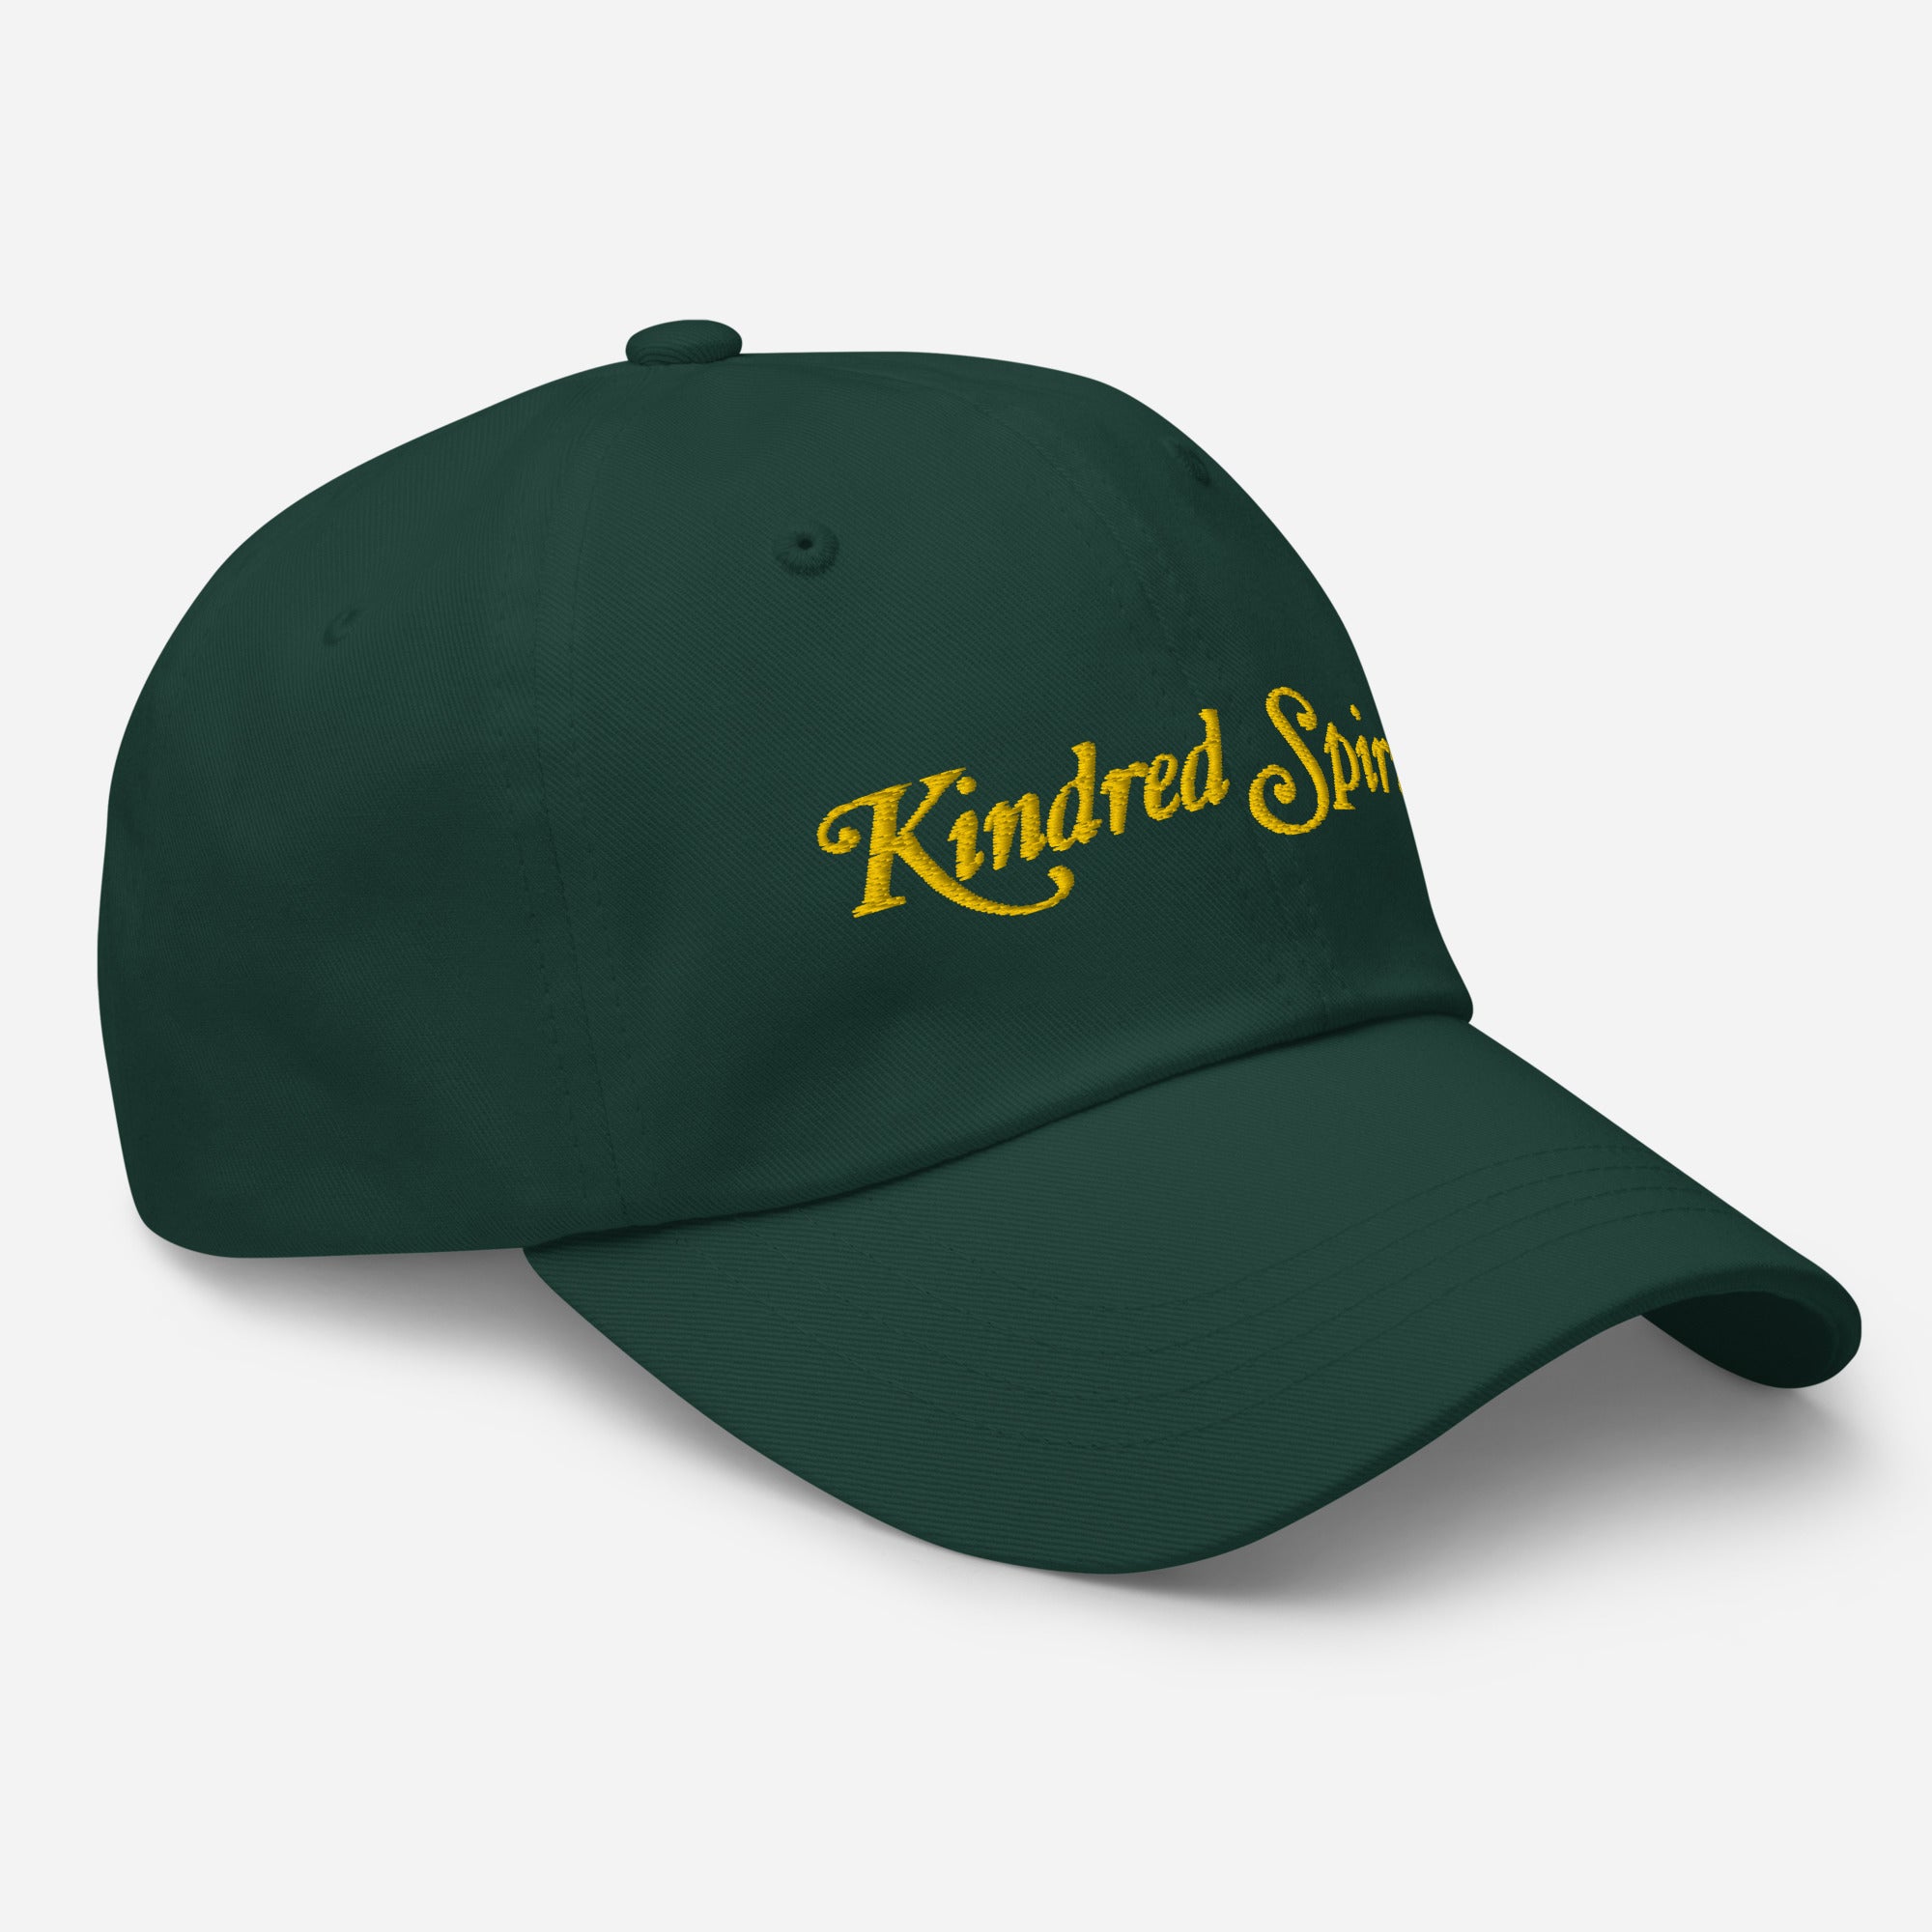 "Kindred Spirits" Embroidered Ballcap